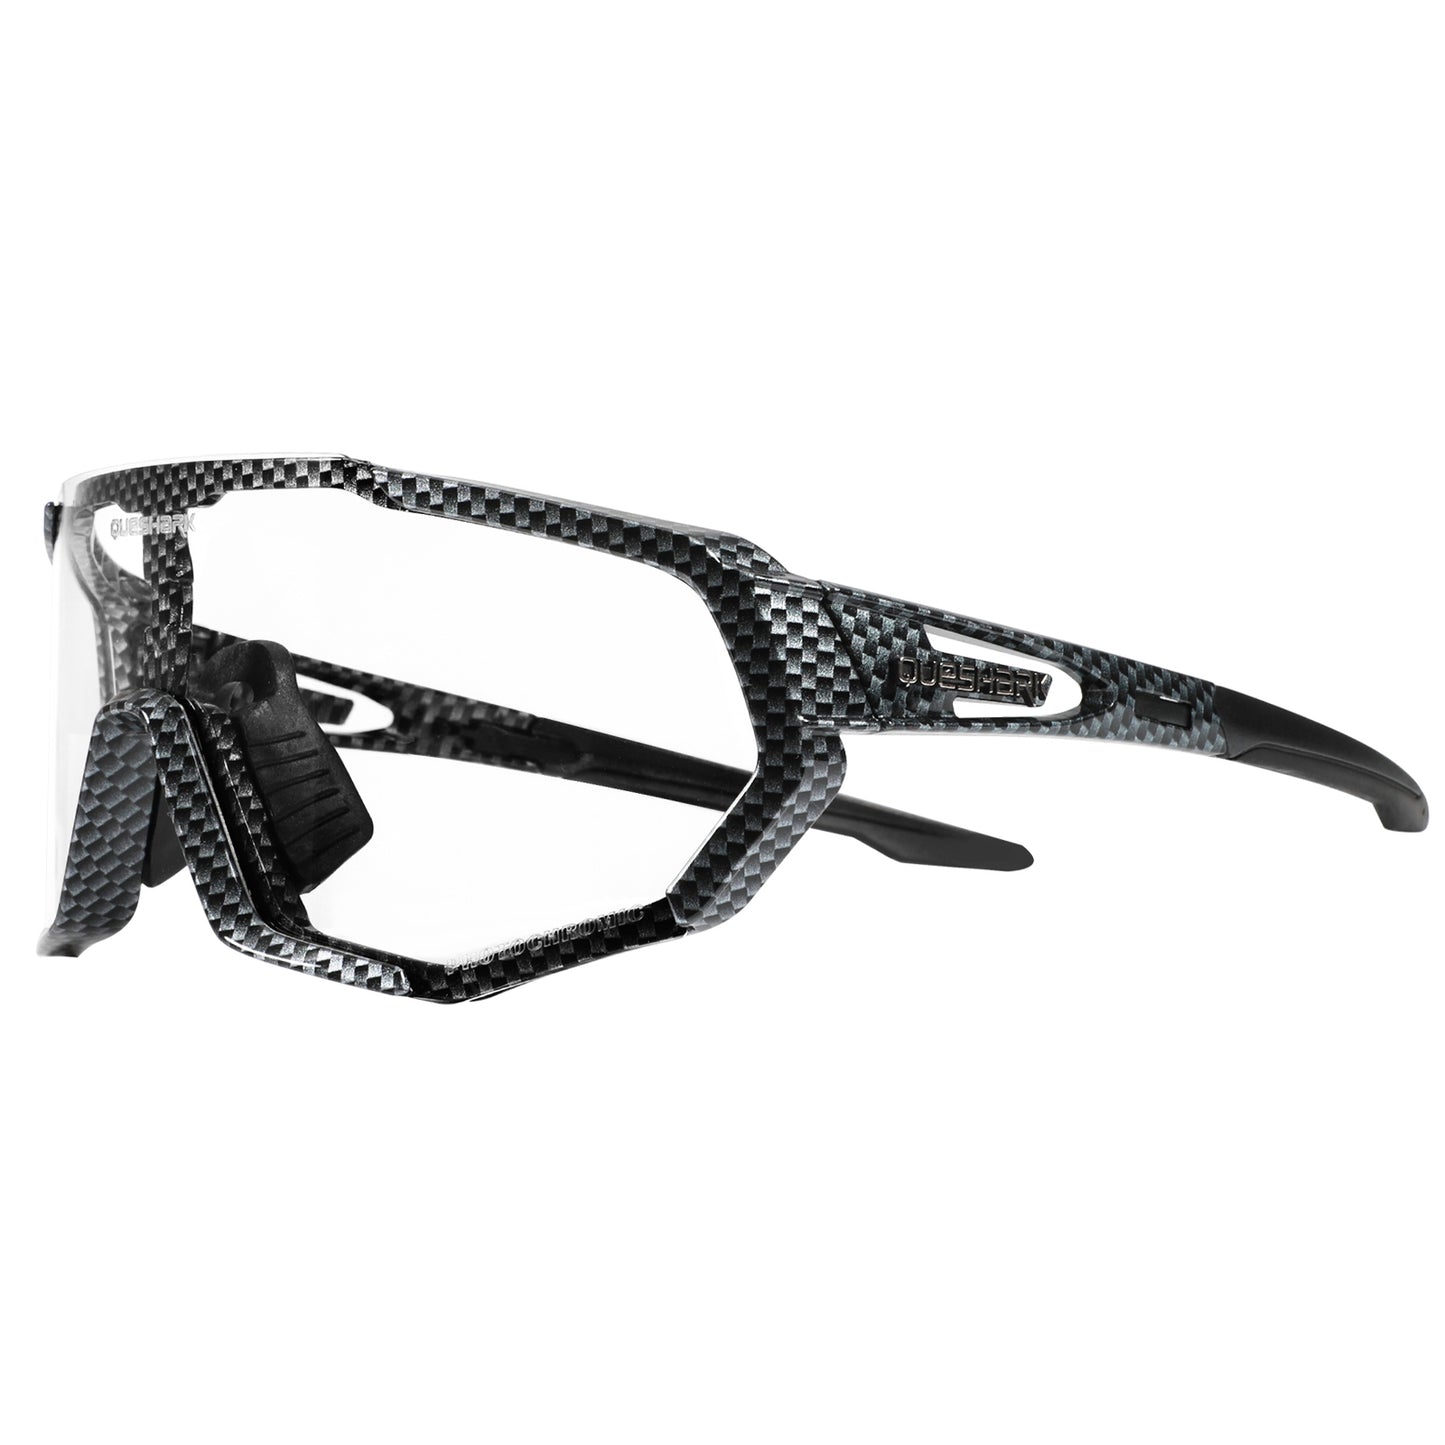 QE48 BS Queshark Occhiali da sole fotocromatici per uomo Donna Sicurezza Occhiali da ciclismo Protezione UV Sport all'aria aperta MTB TXW